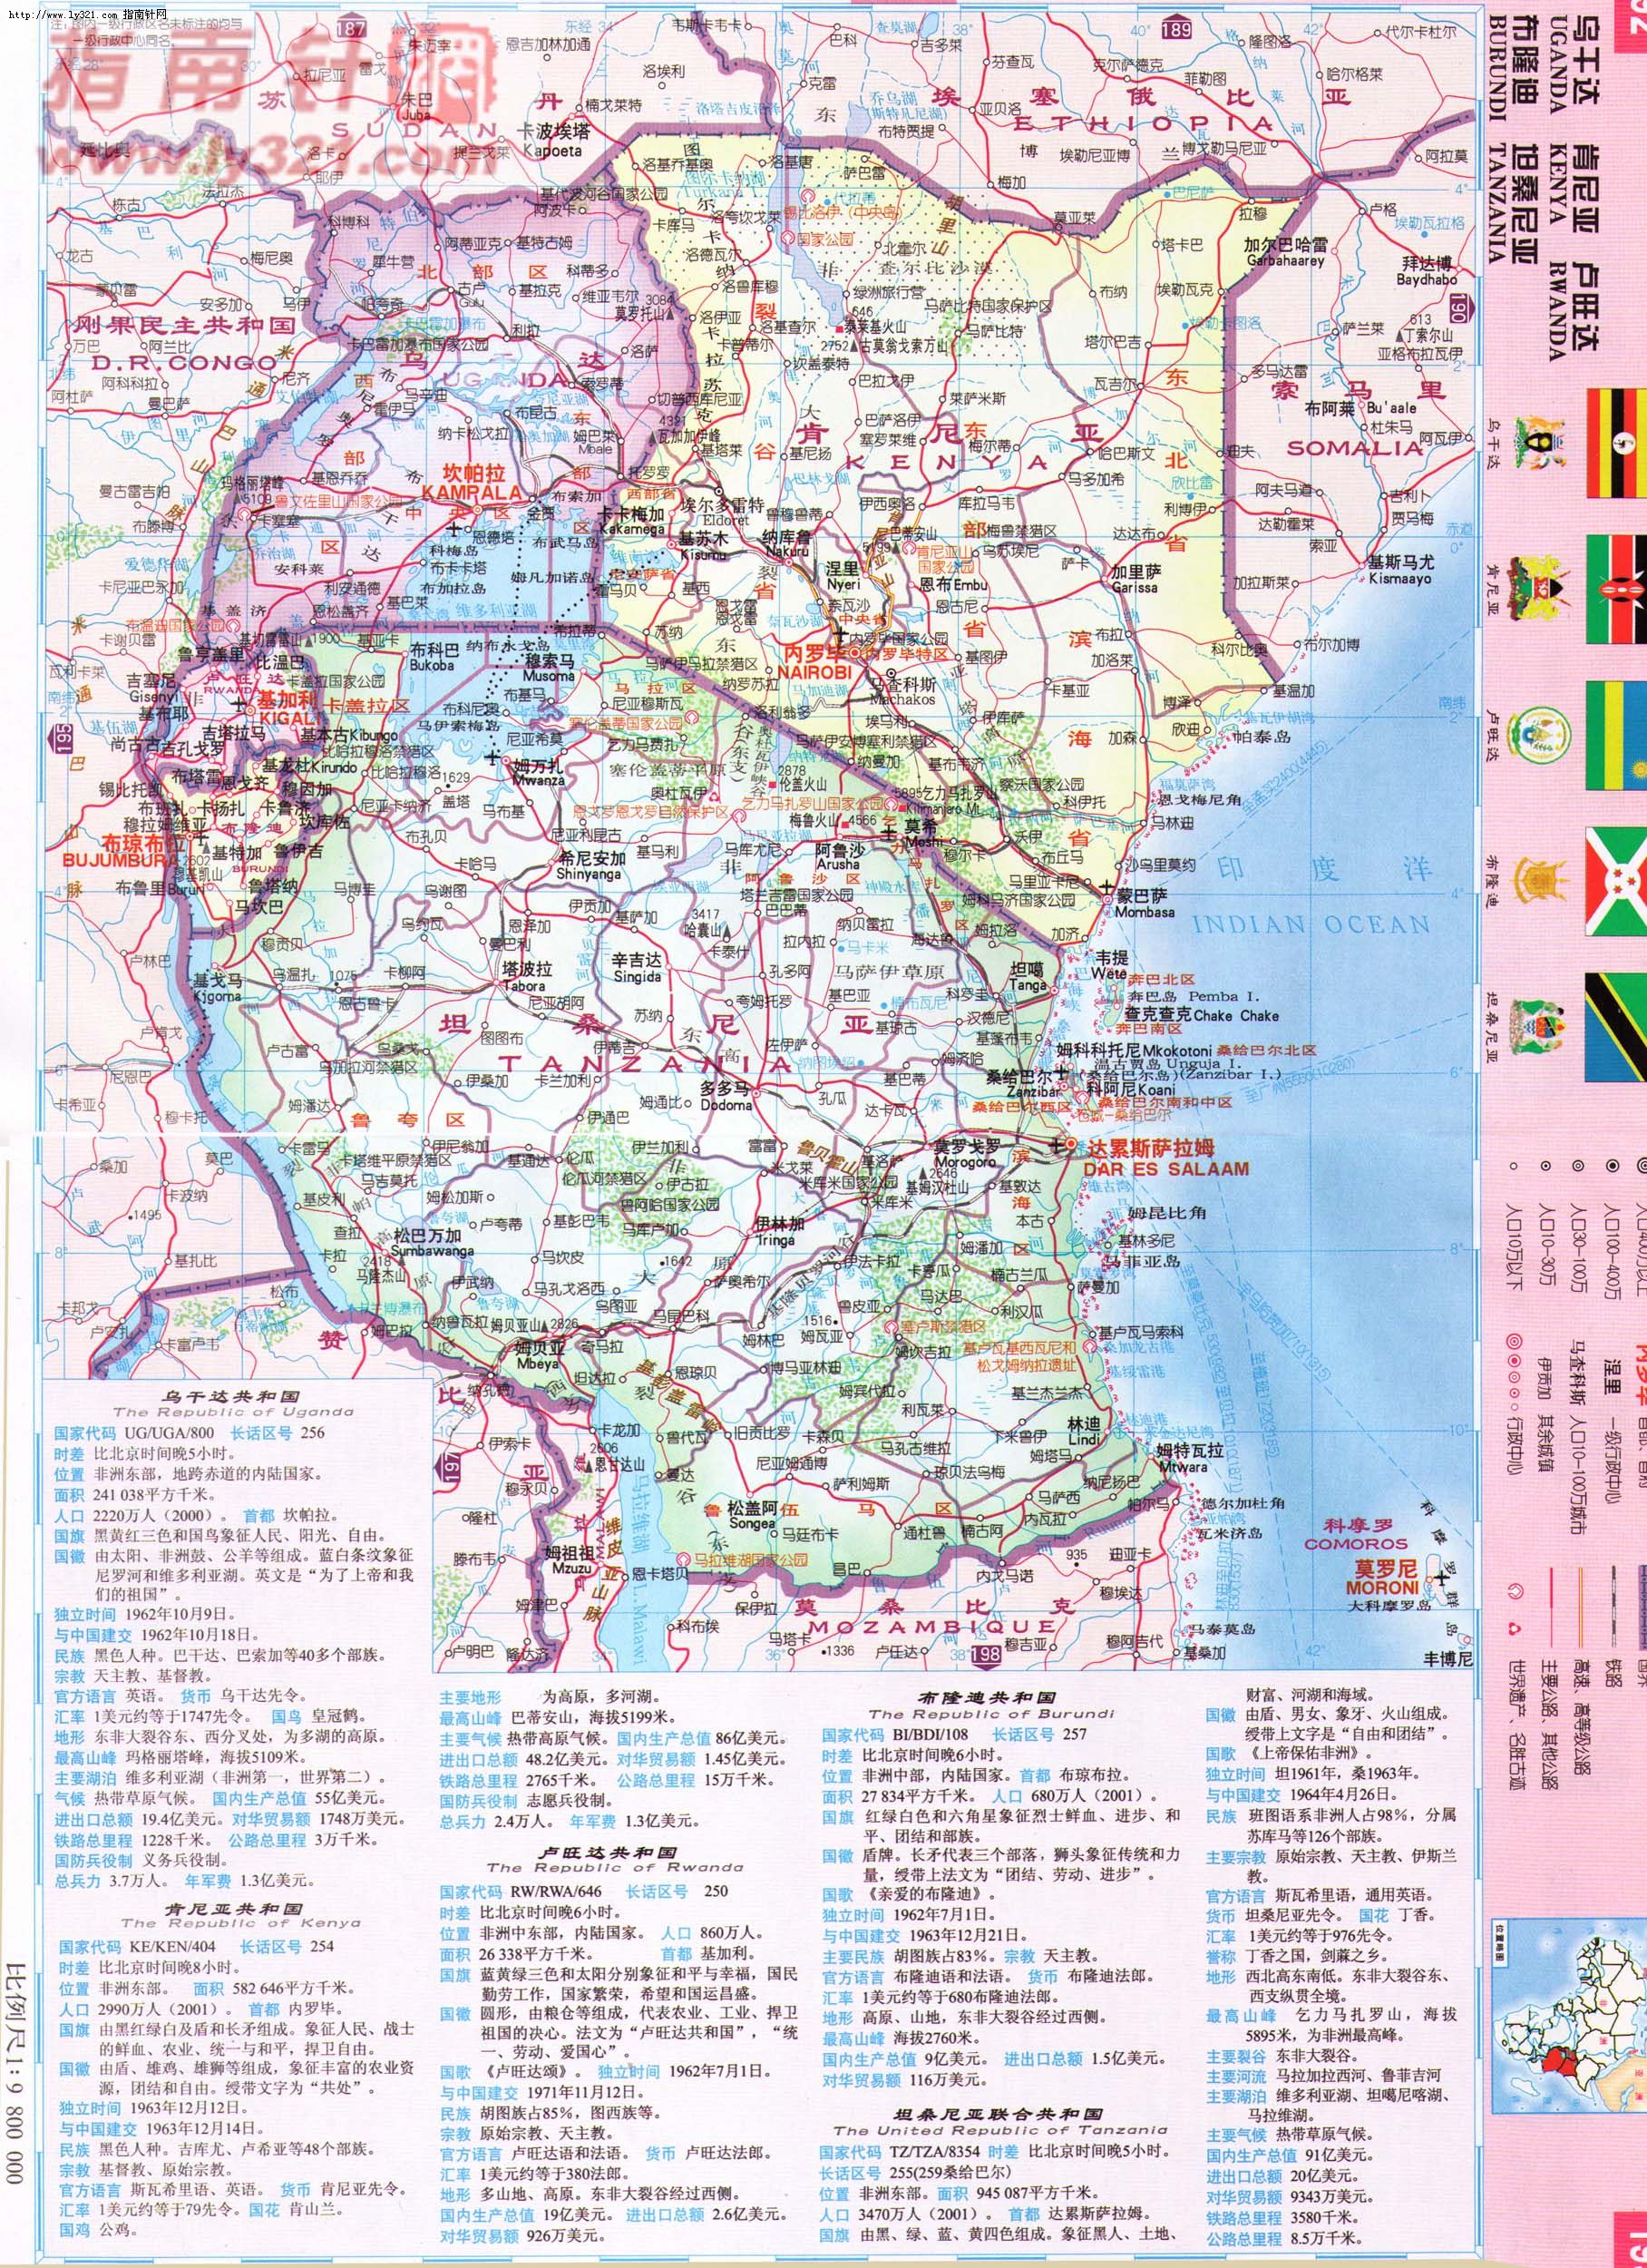 世界地圖-坦桑尼亞.jpg